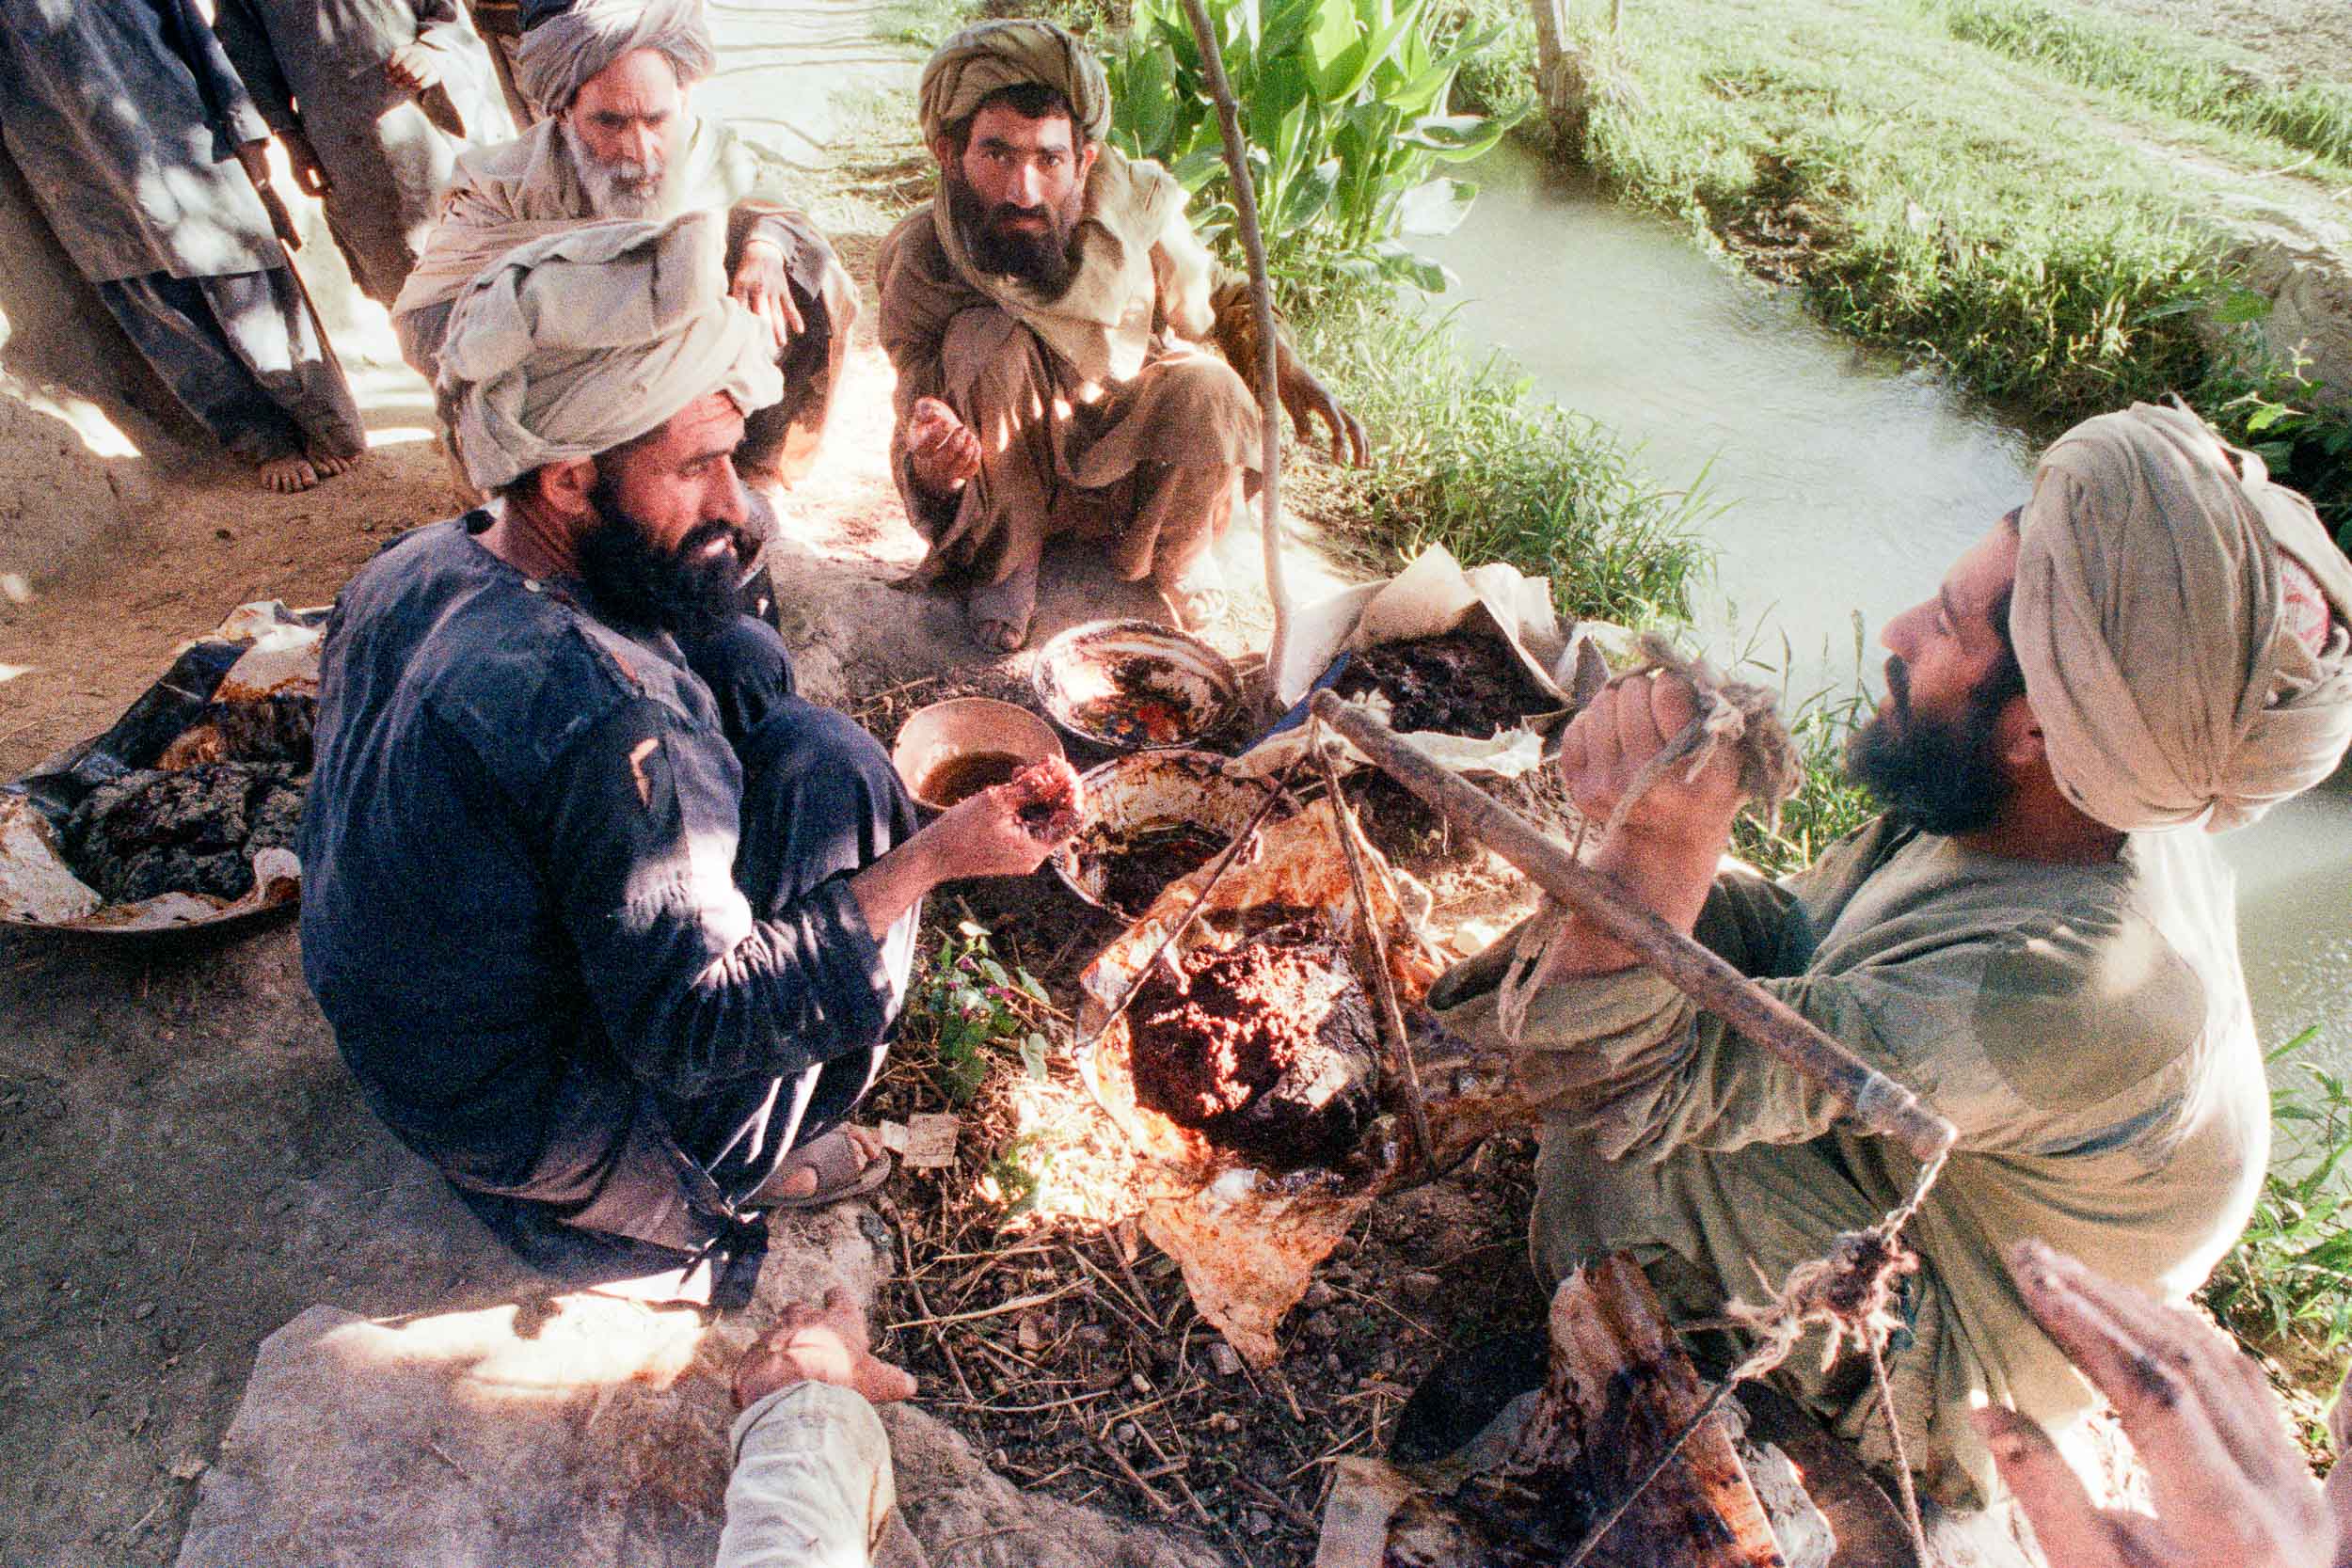 Processing Opium, Afghanistan 1988